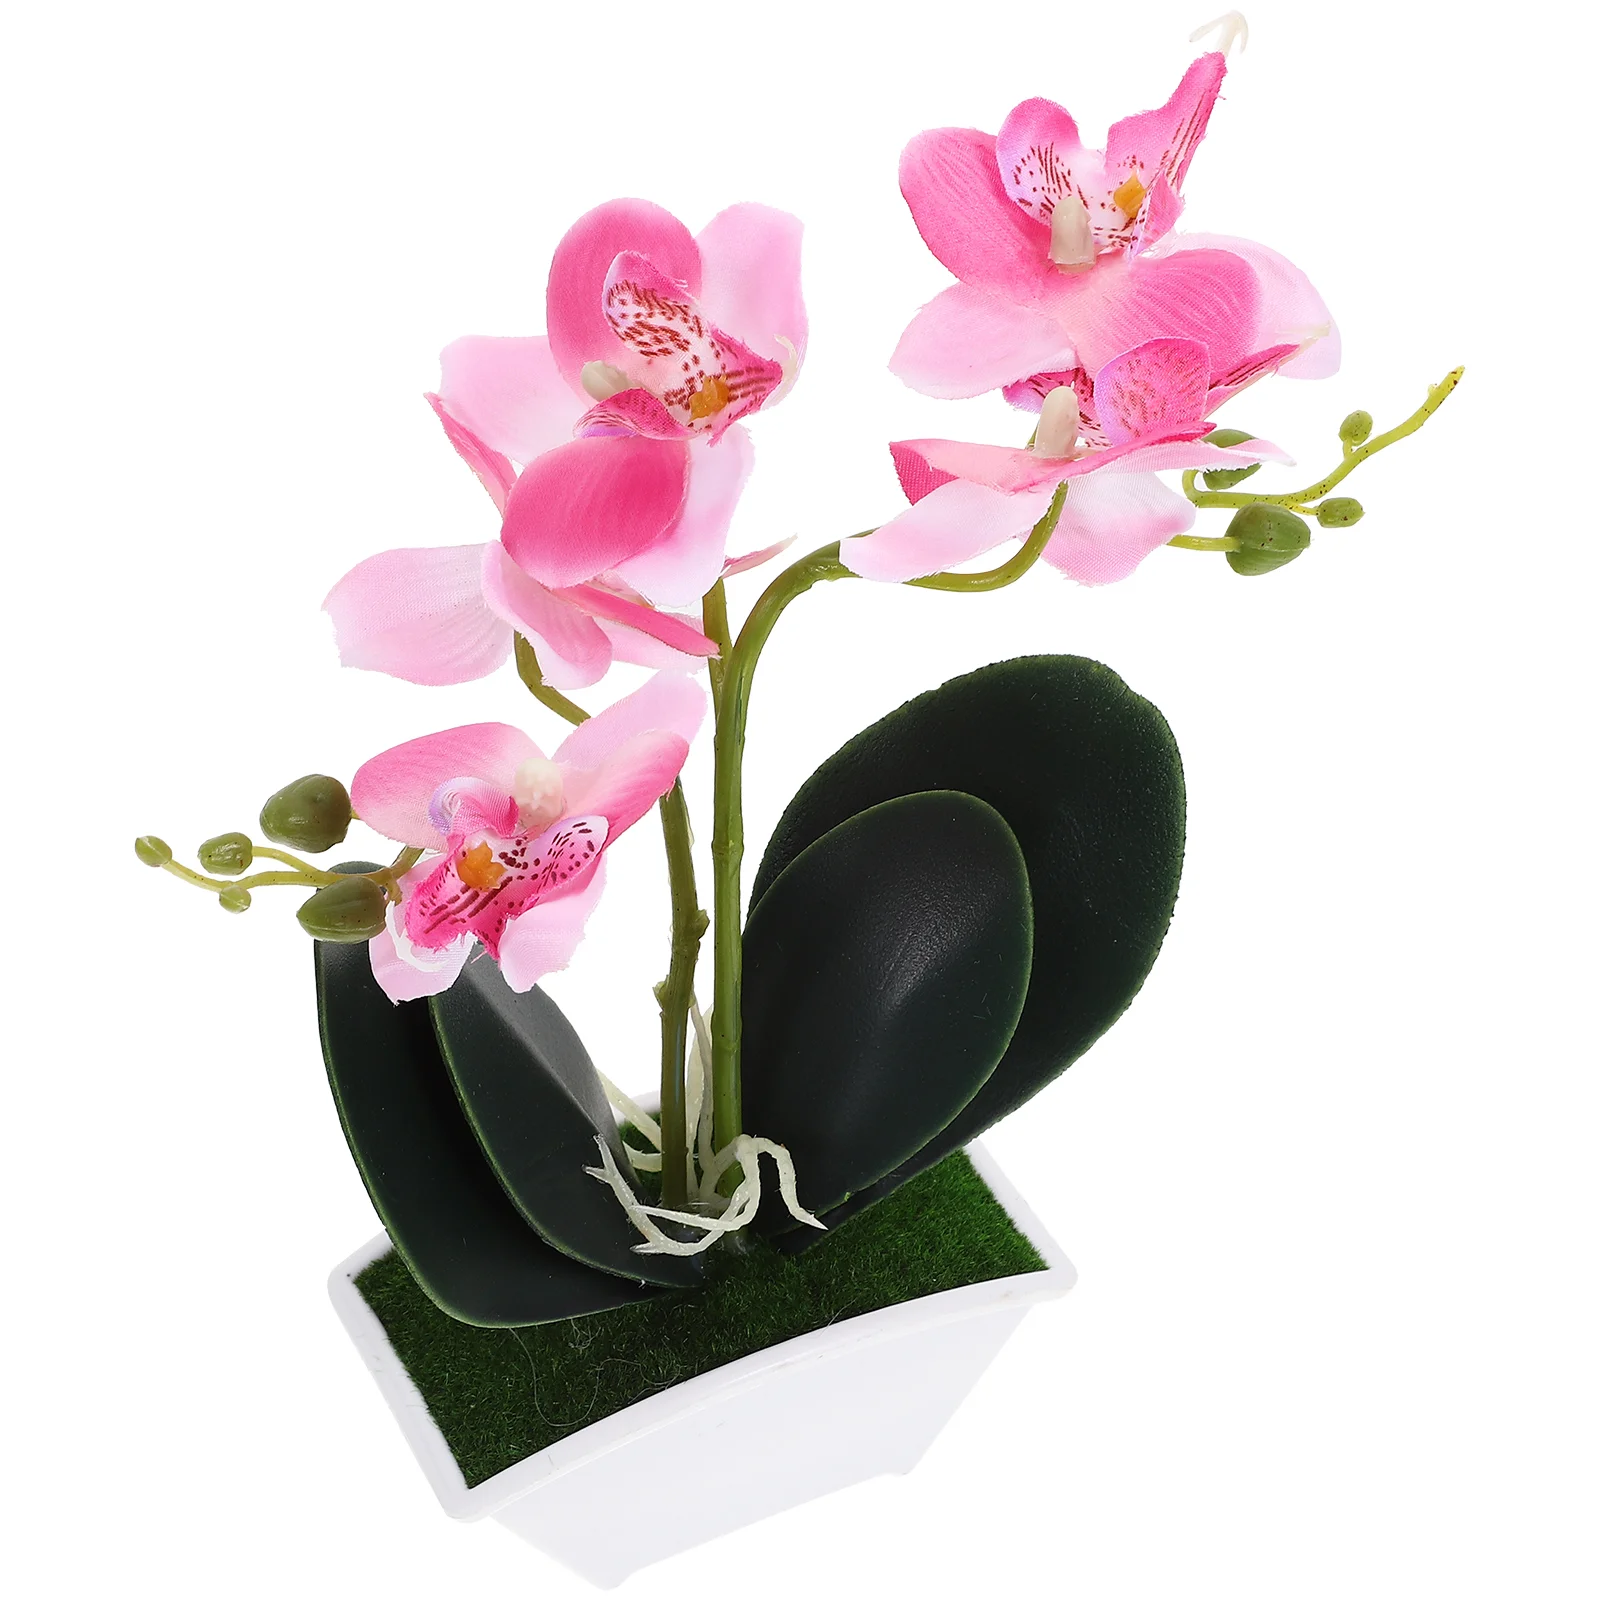 

Orchid Spring Decor Decorations Home Desktop Pots Table Silk Flower Faux Plants Bathroom Mini Orchids Ornament